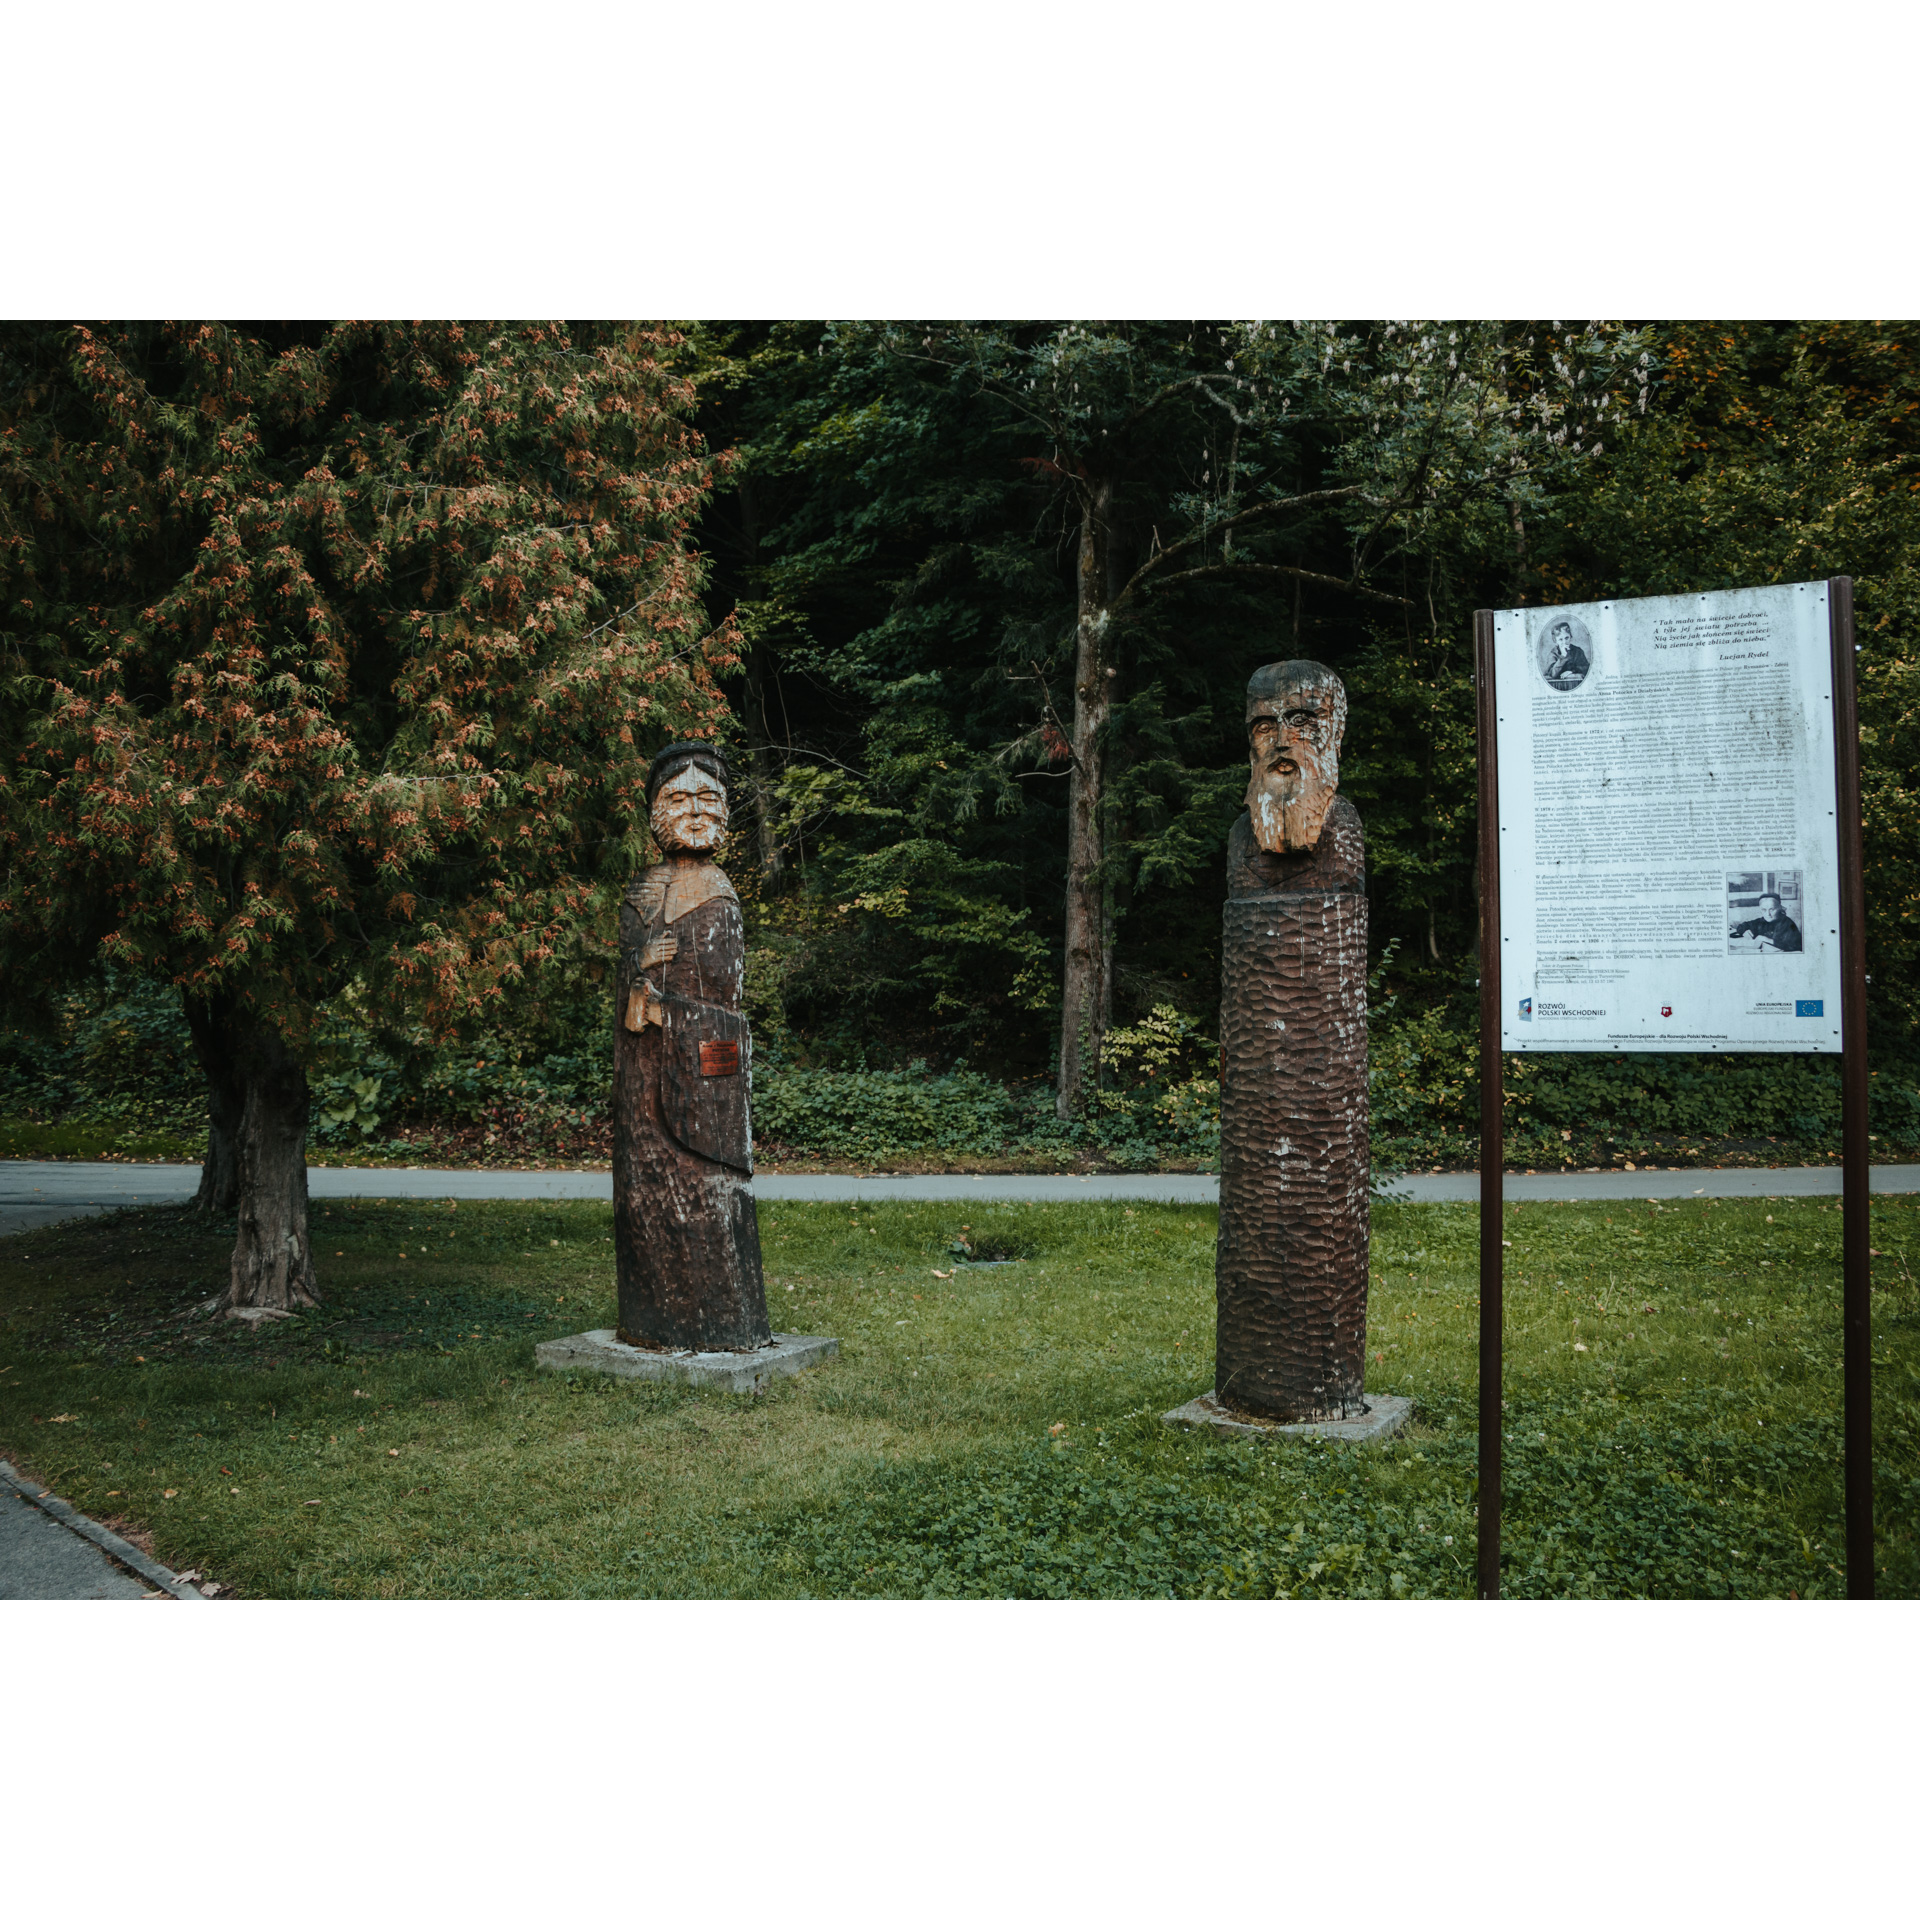 Tablica informacyjna i dwie figury drewniane przedstawiające mężczyznę i kobietę, stojące na zielonej trawie wśród drzew 